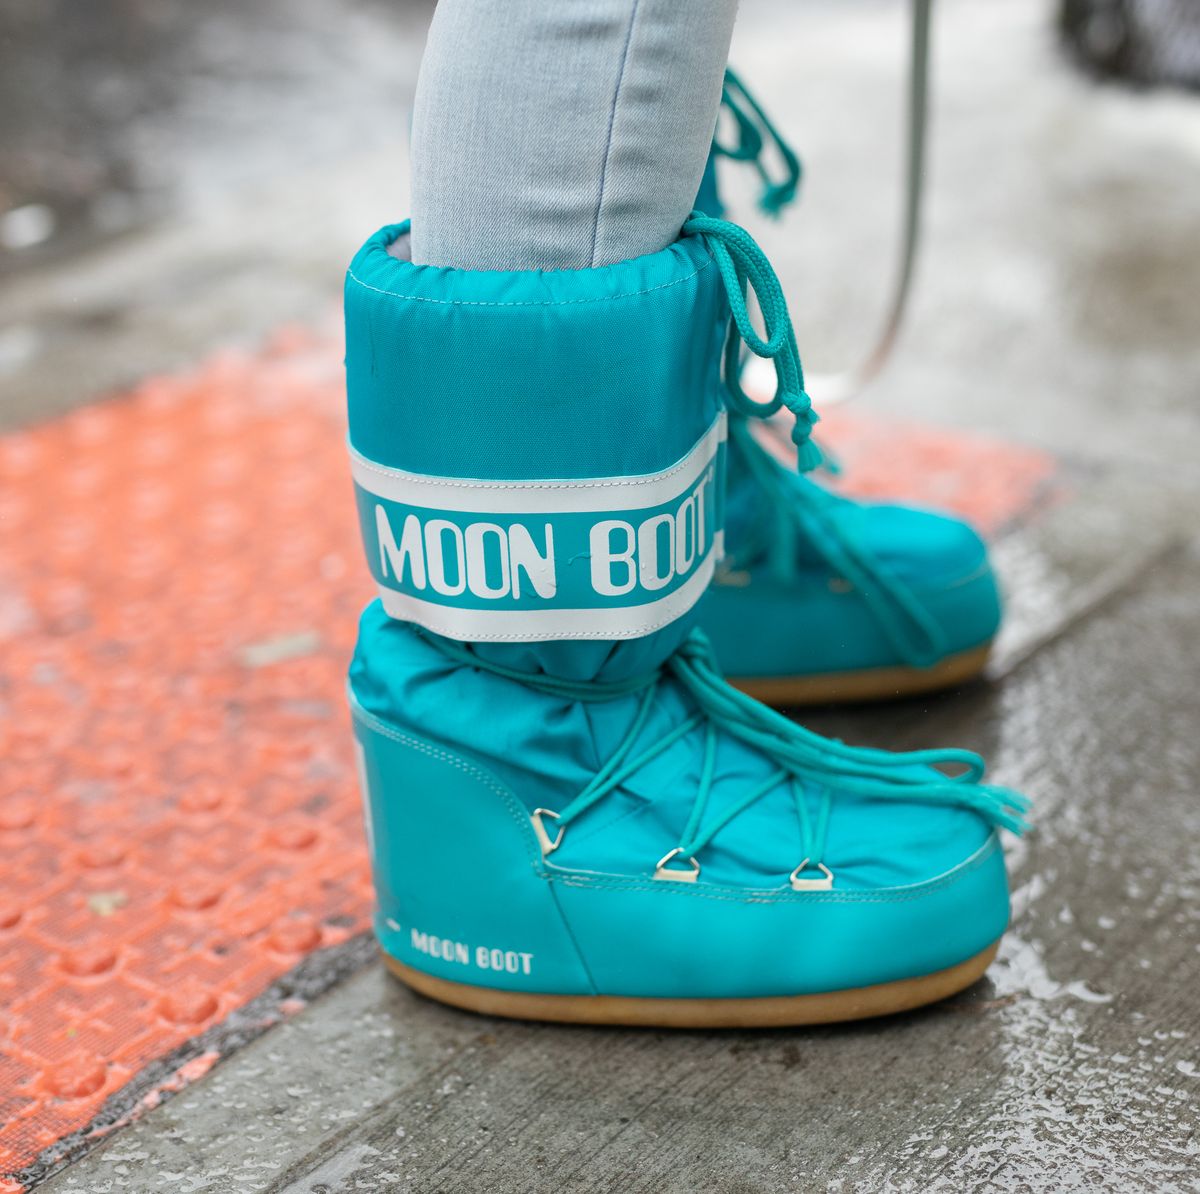 Las Boots: las botas arrasan en Instagram